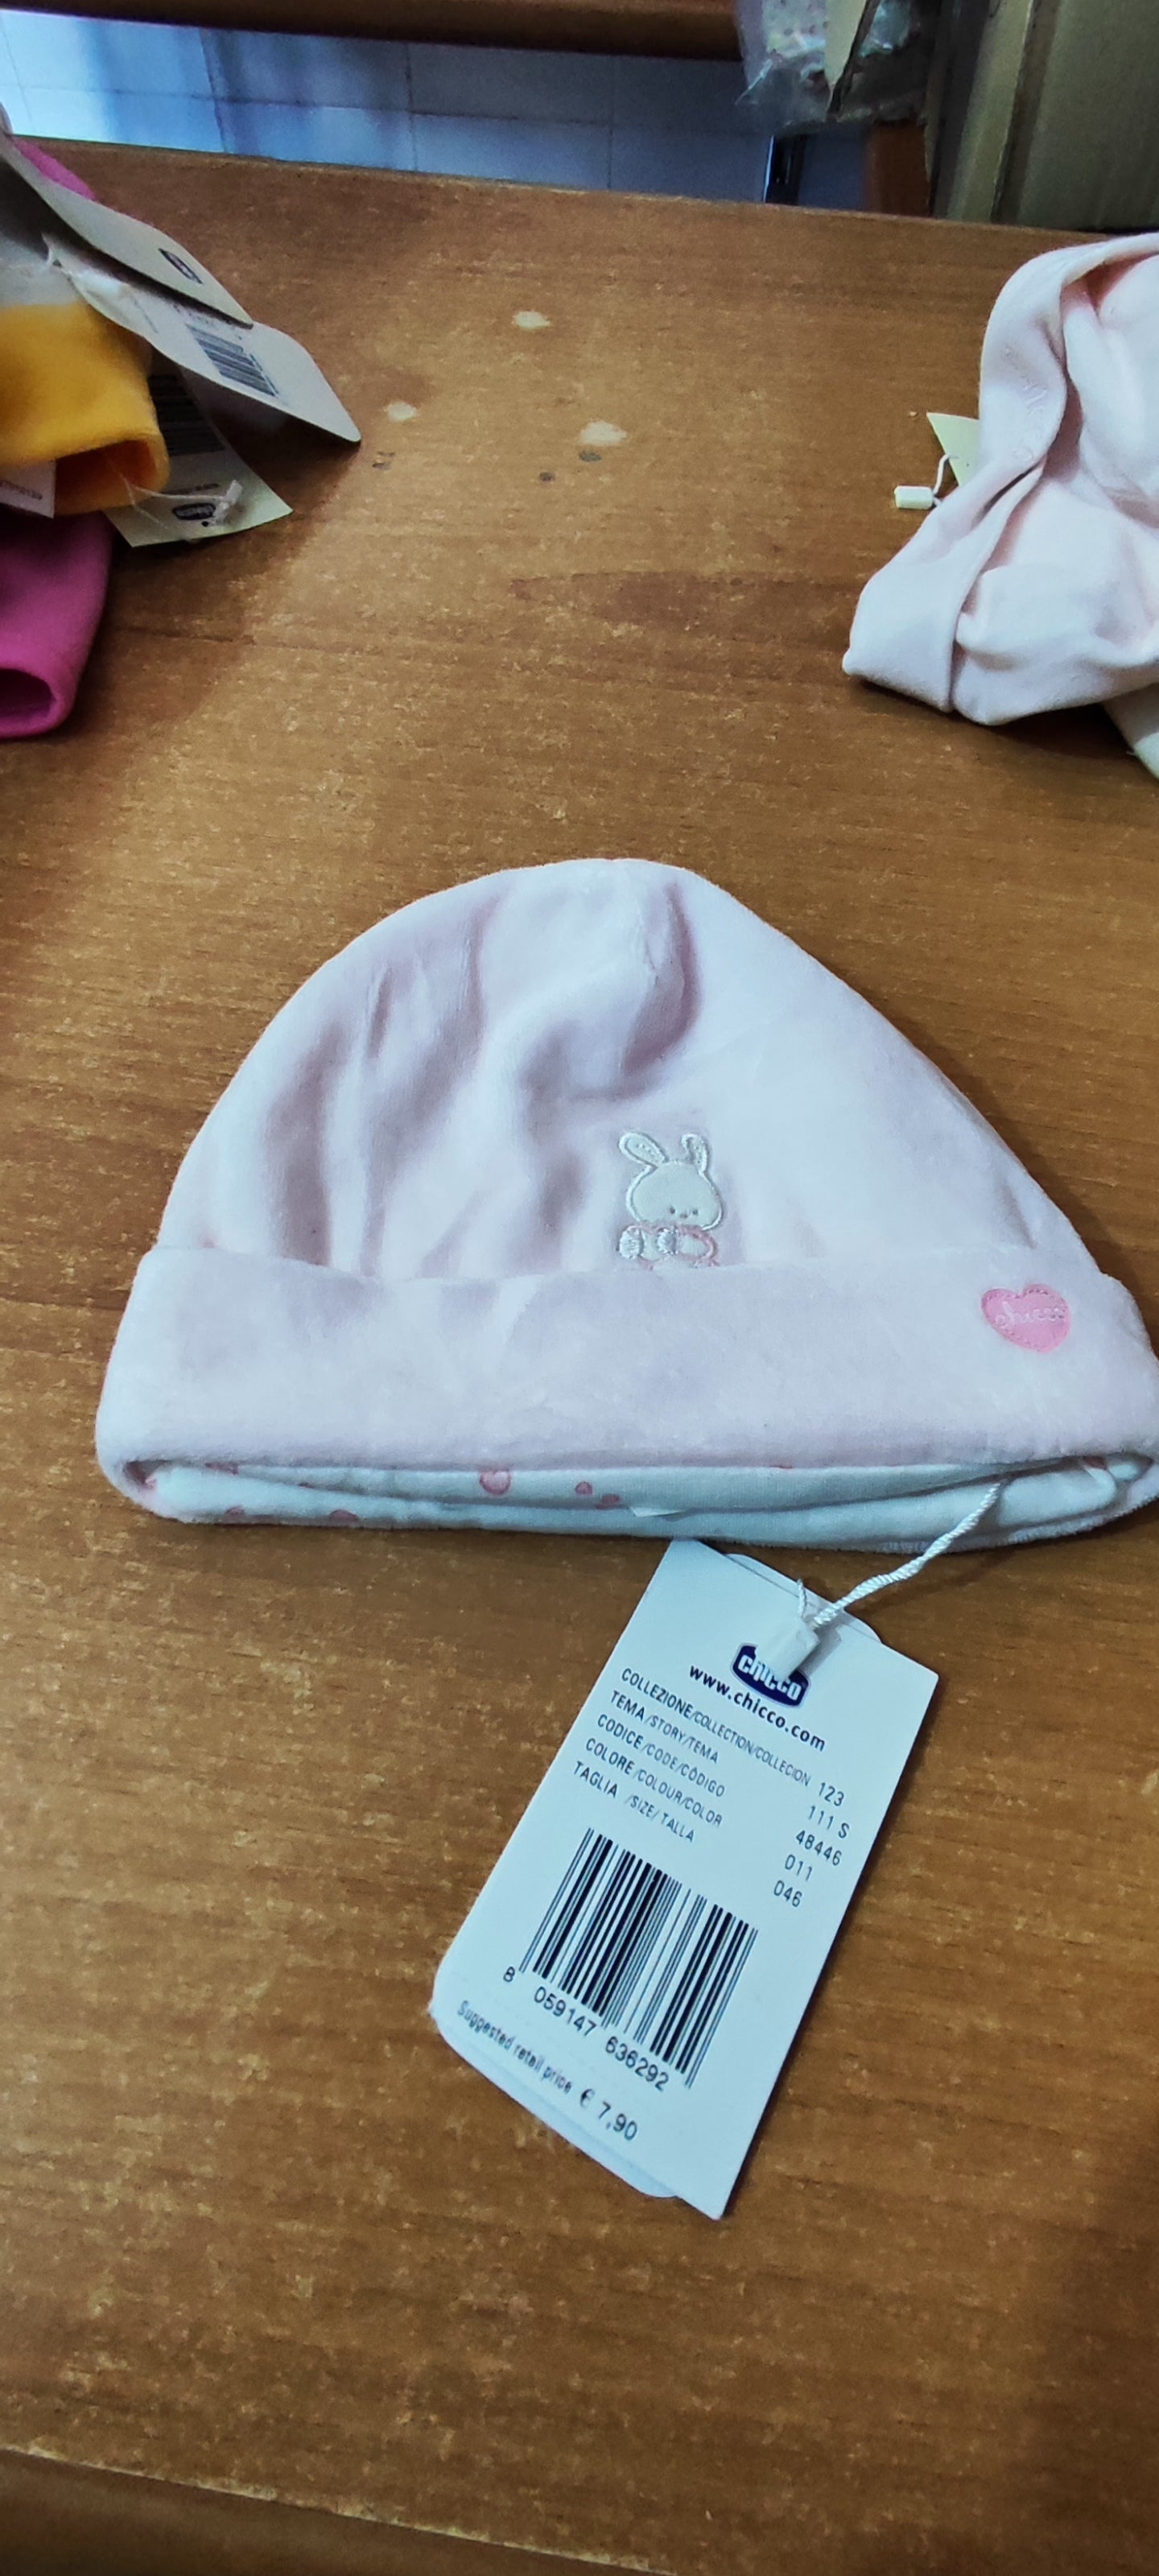 Cappelli neonati chicco a 1,50